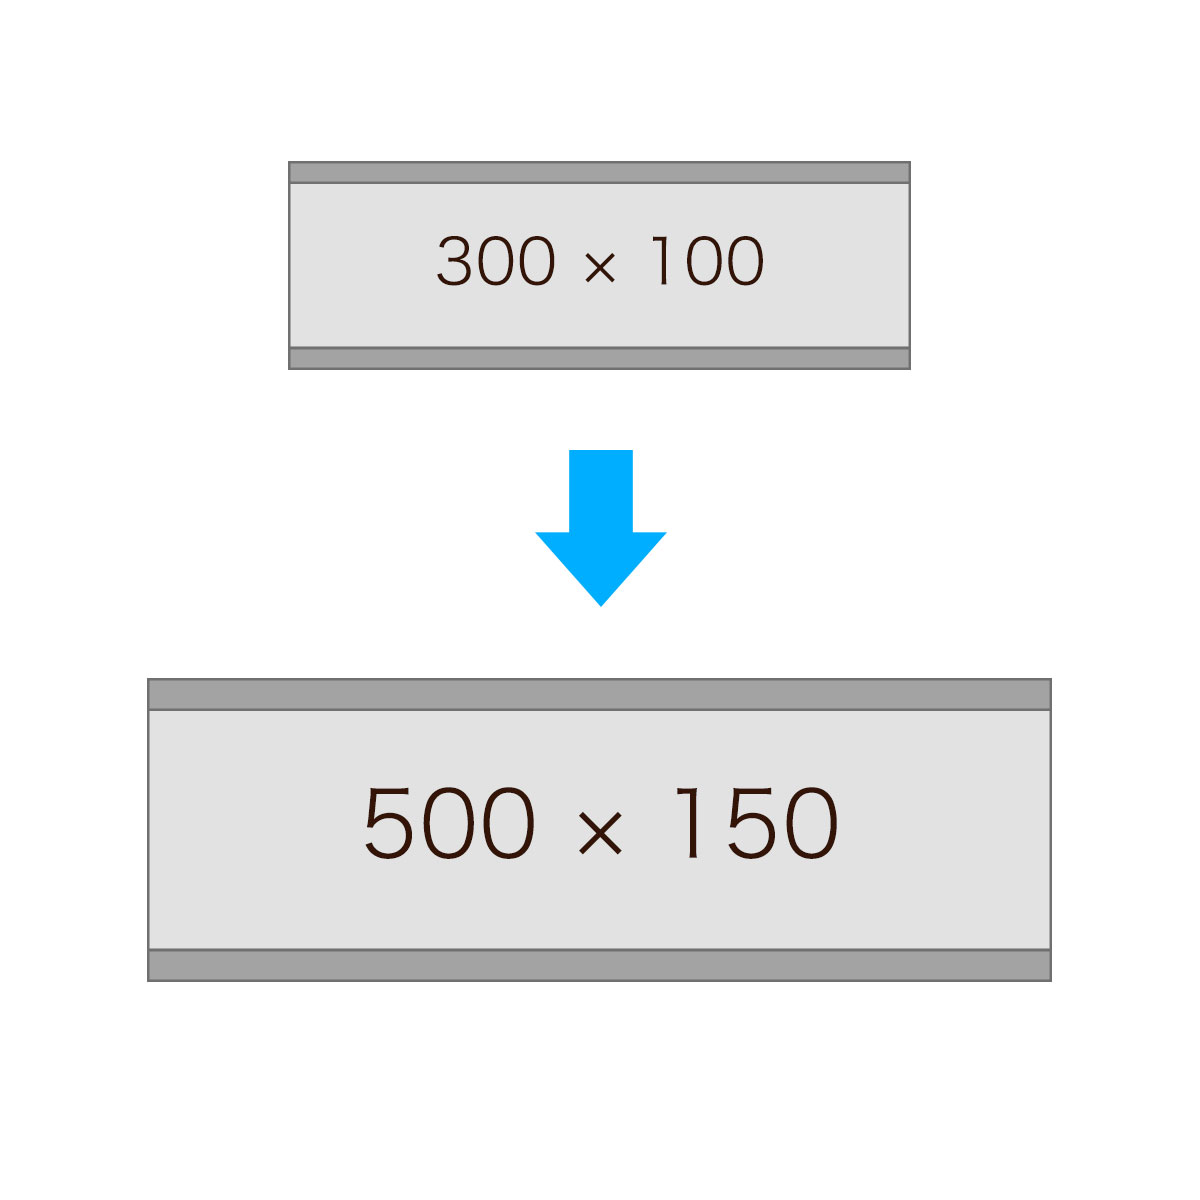 【単品購入不可】500×150mmへサイズ変更 ステンレスフレーム表札用サイズ変更オプション